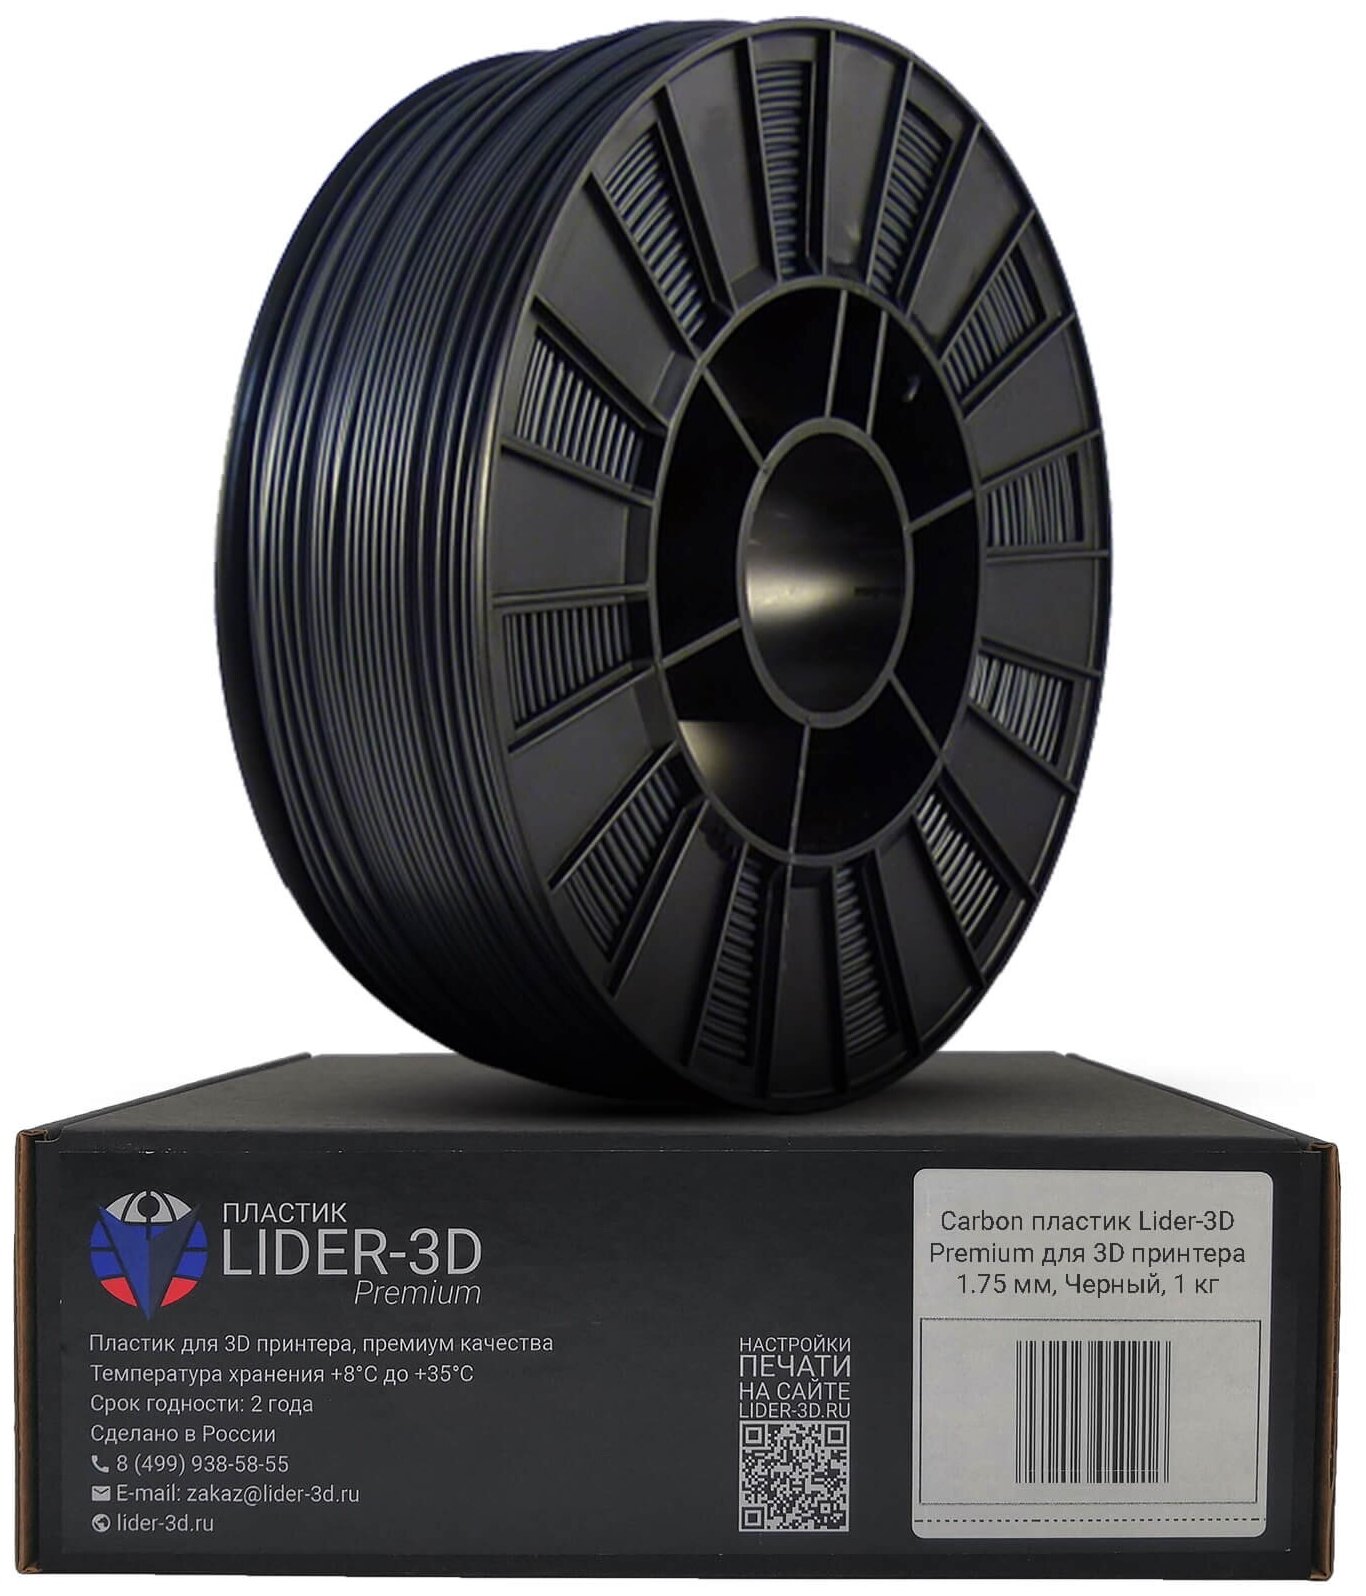 Carbon пластик LIDER-3D Premium для 3D принтера 1.75 мм, Чёрный, 1 кг